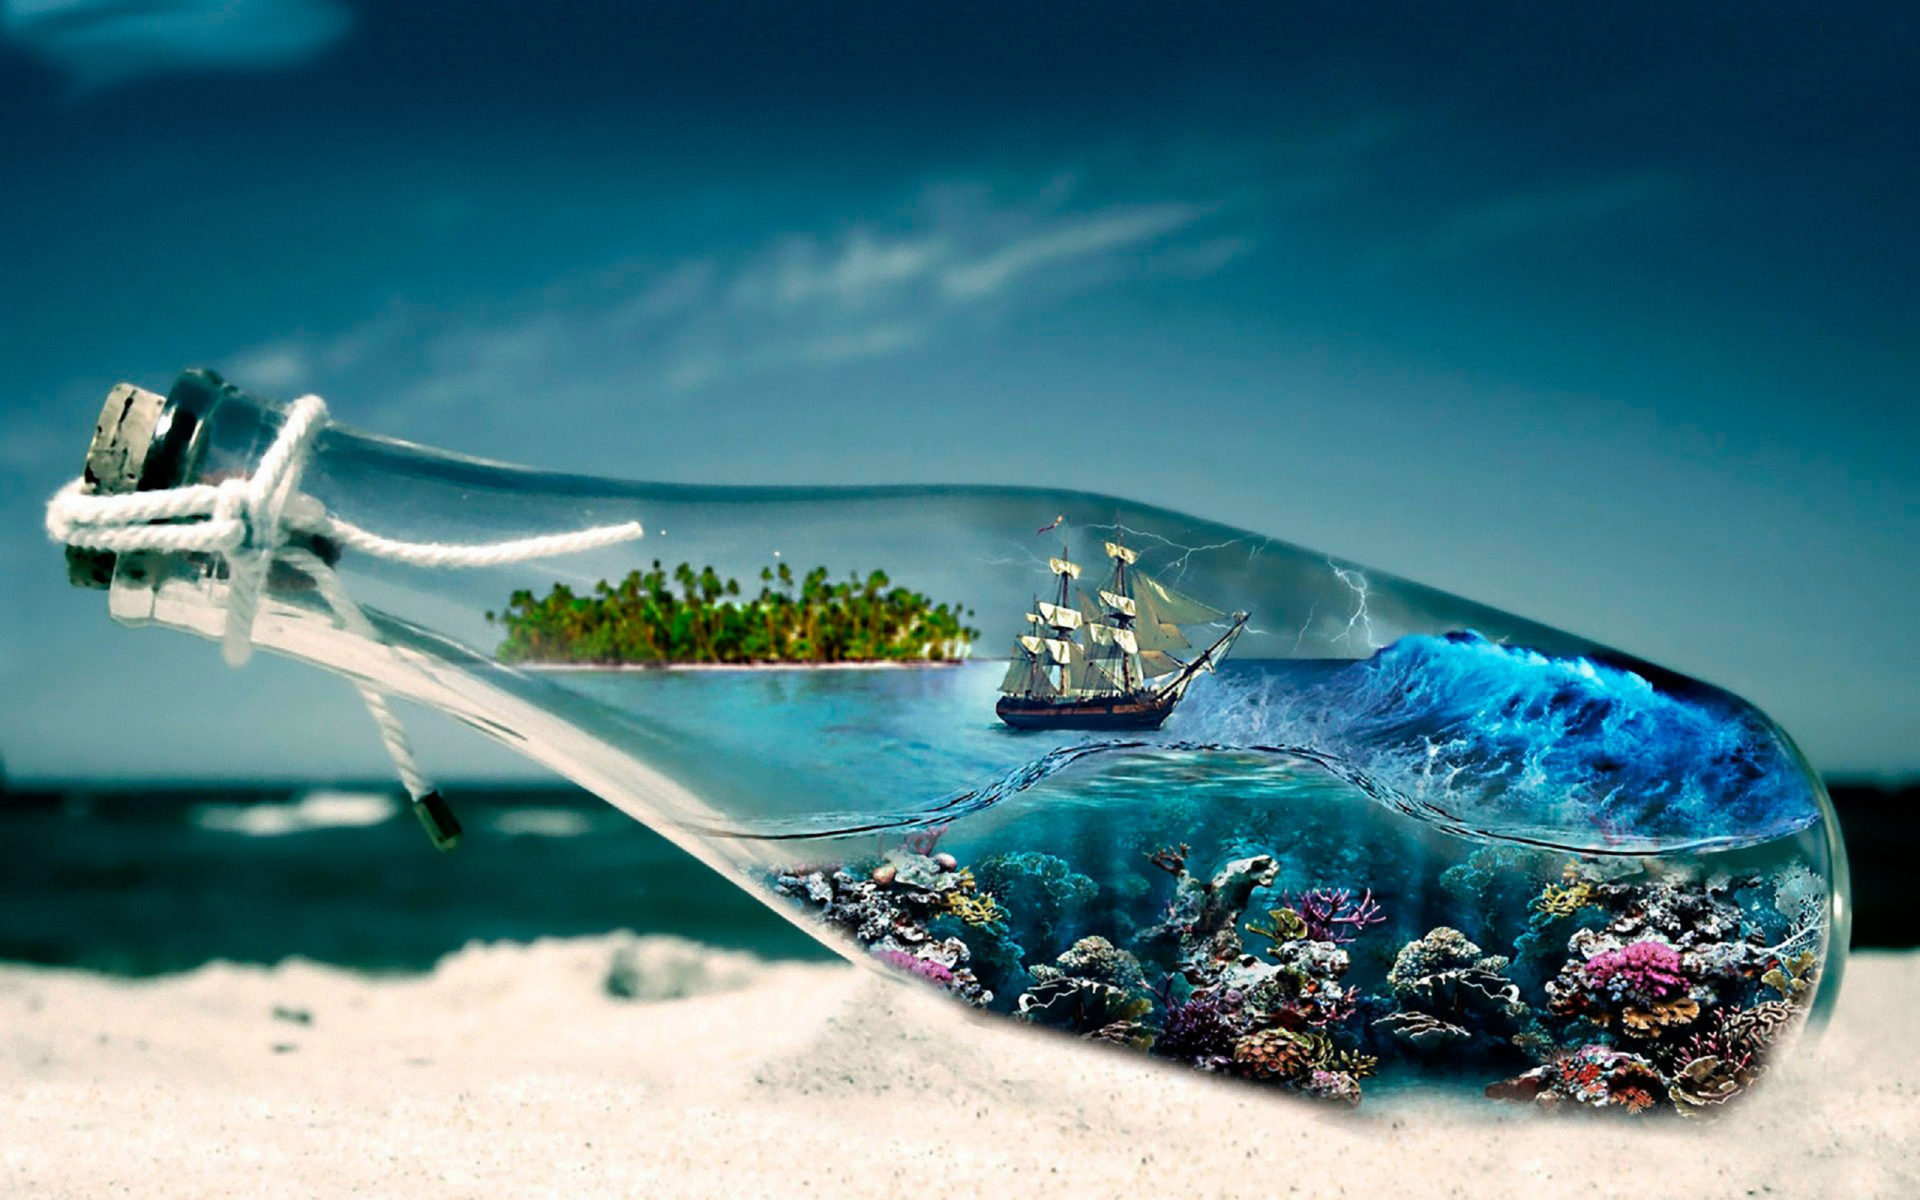 بک گراند دریا کوچک حیرت آور درون بطری شیشه ای در ساحل دریا